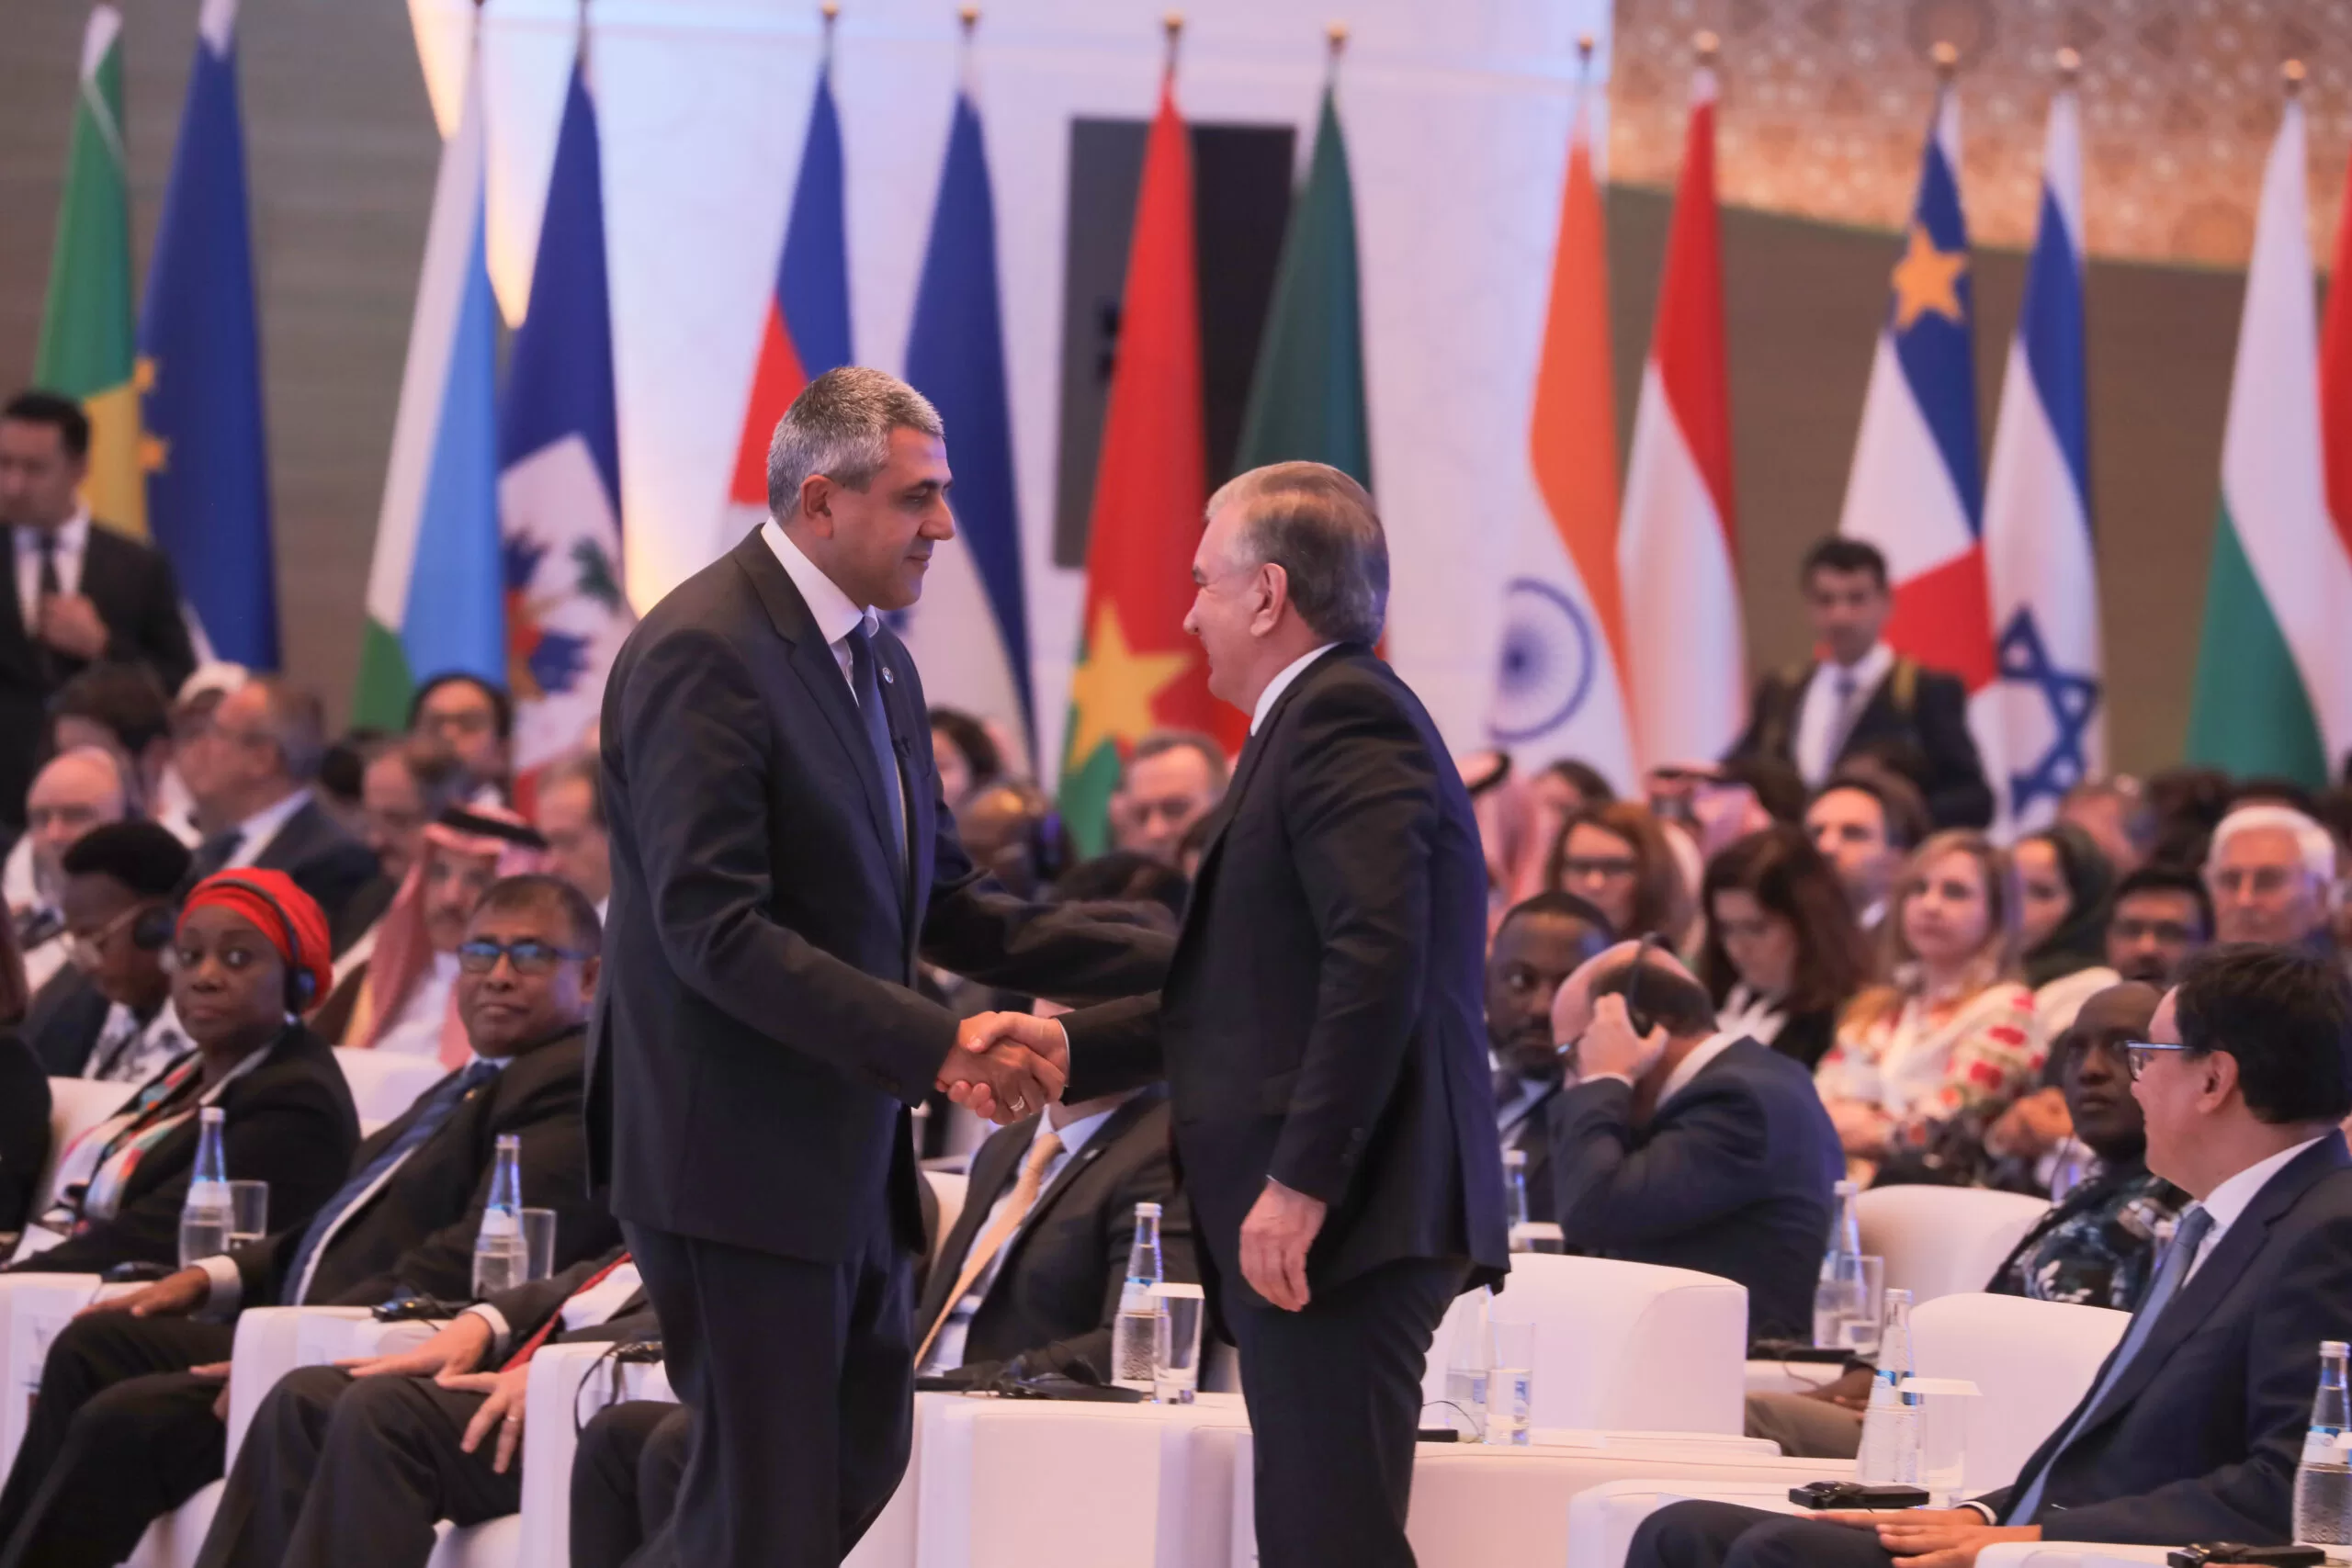 El Secretario General de la OMT, Zurab Pololikashvili, en la apertura del evento de la OMT saluda al presidente de Uzbekistán, Shavkat Mirziyoyev